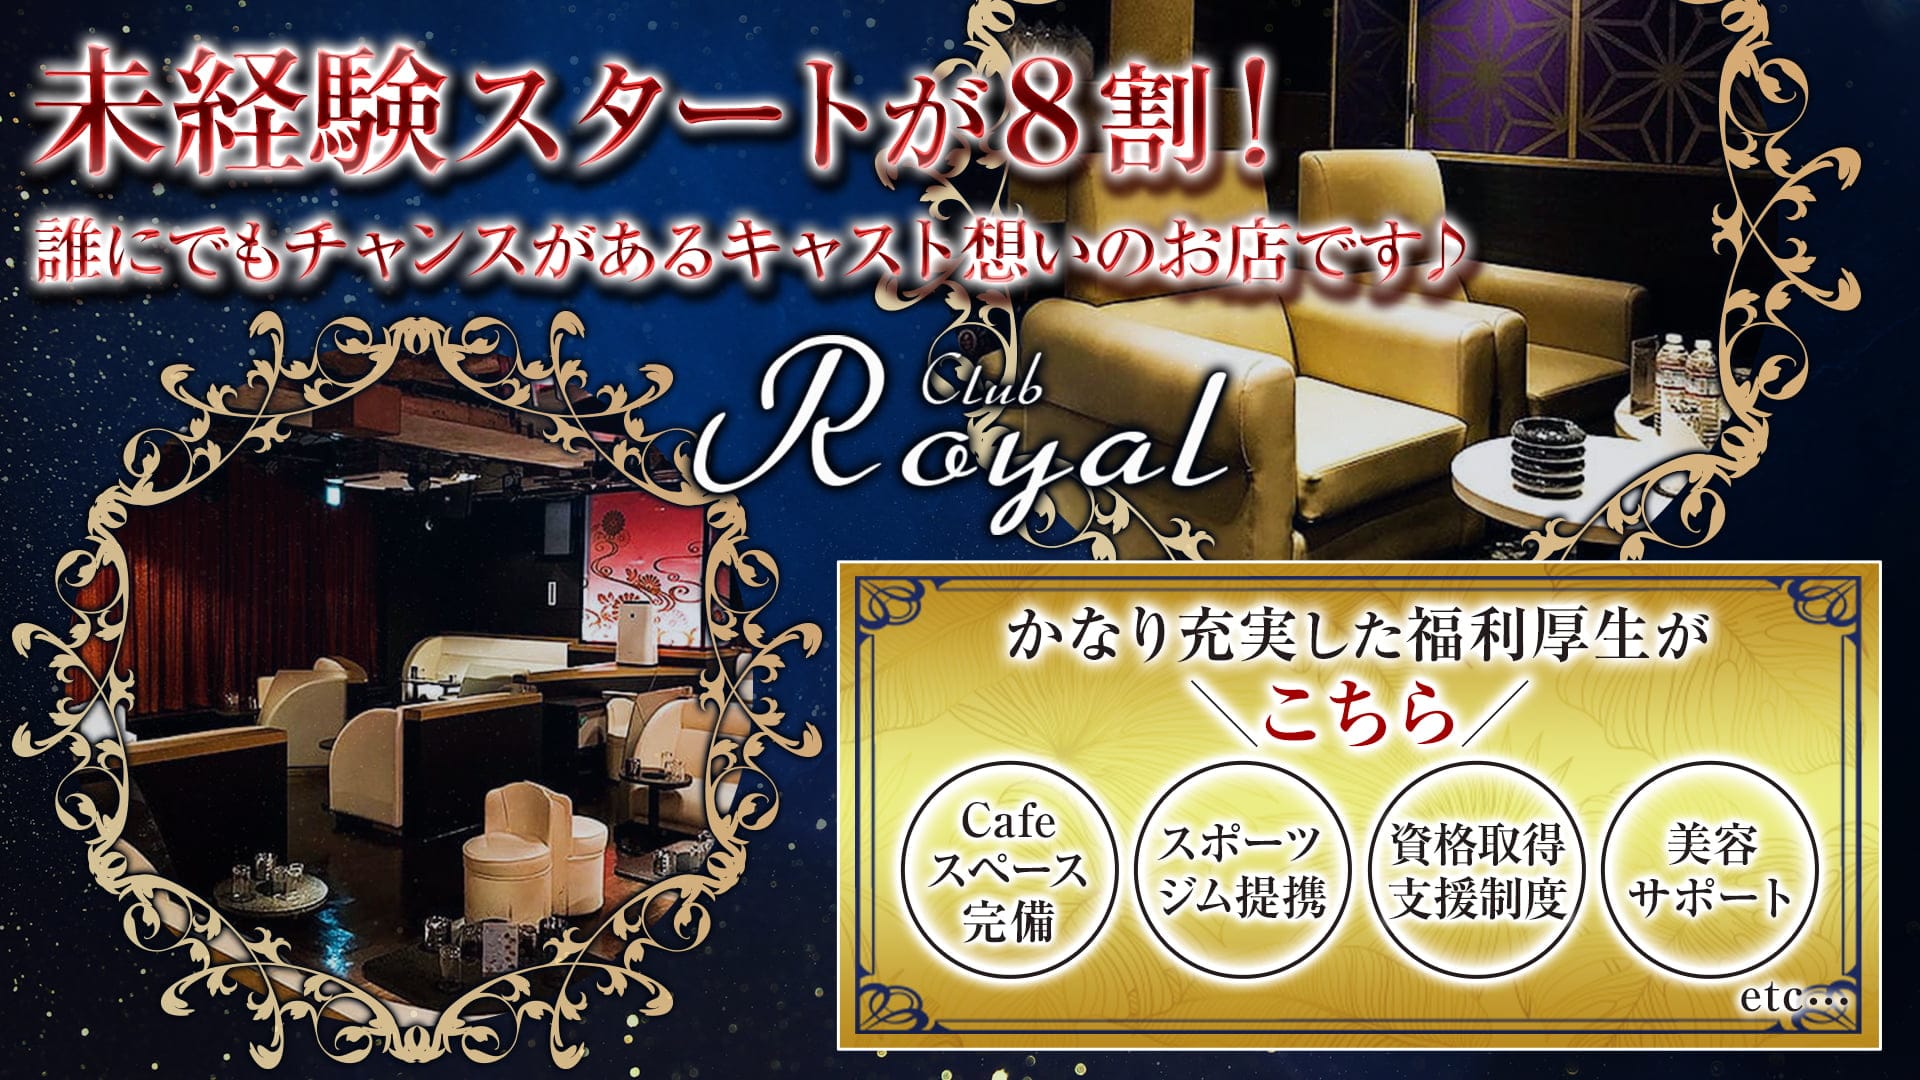 【浅草】CLUB Royal(クラブ ロイヤル)【公式求人・体入情報】 上野キャバクラ TOP画像